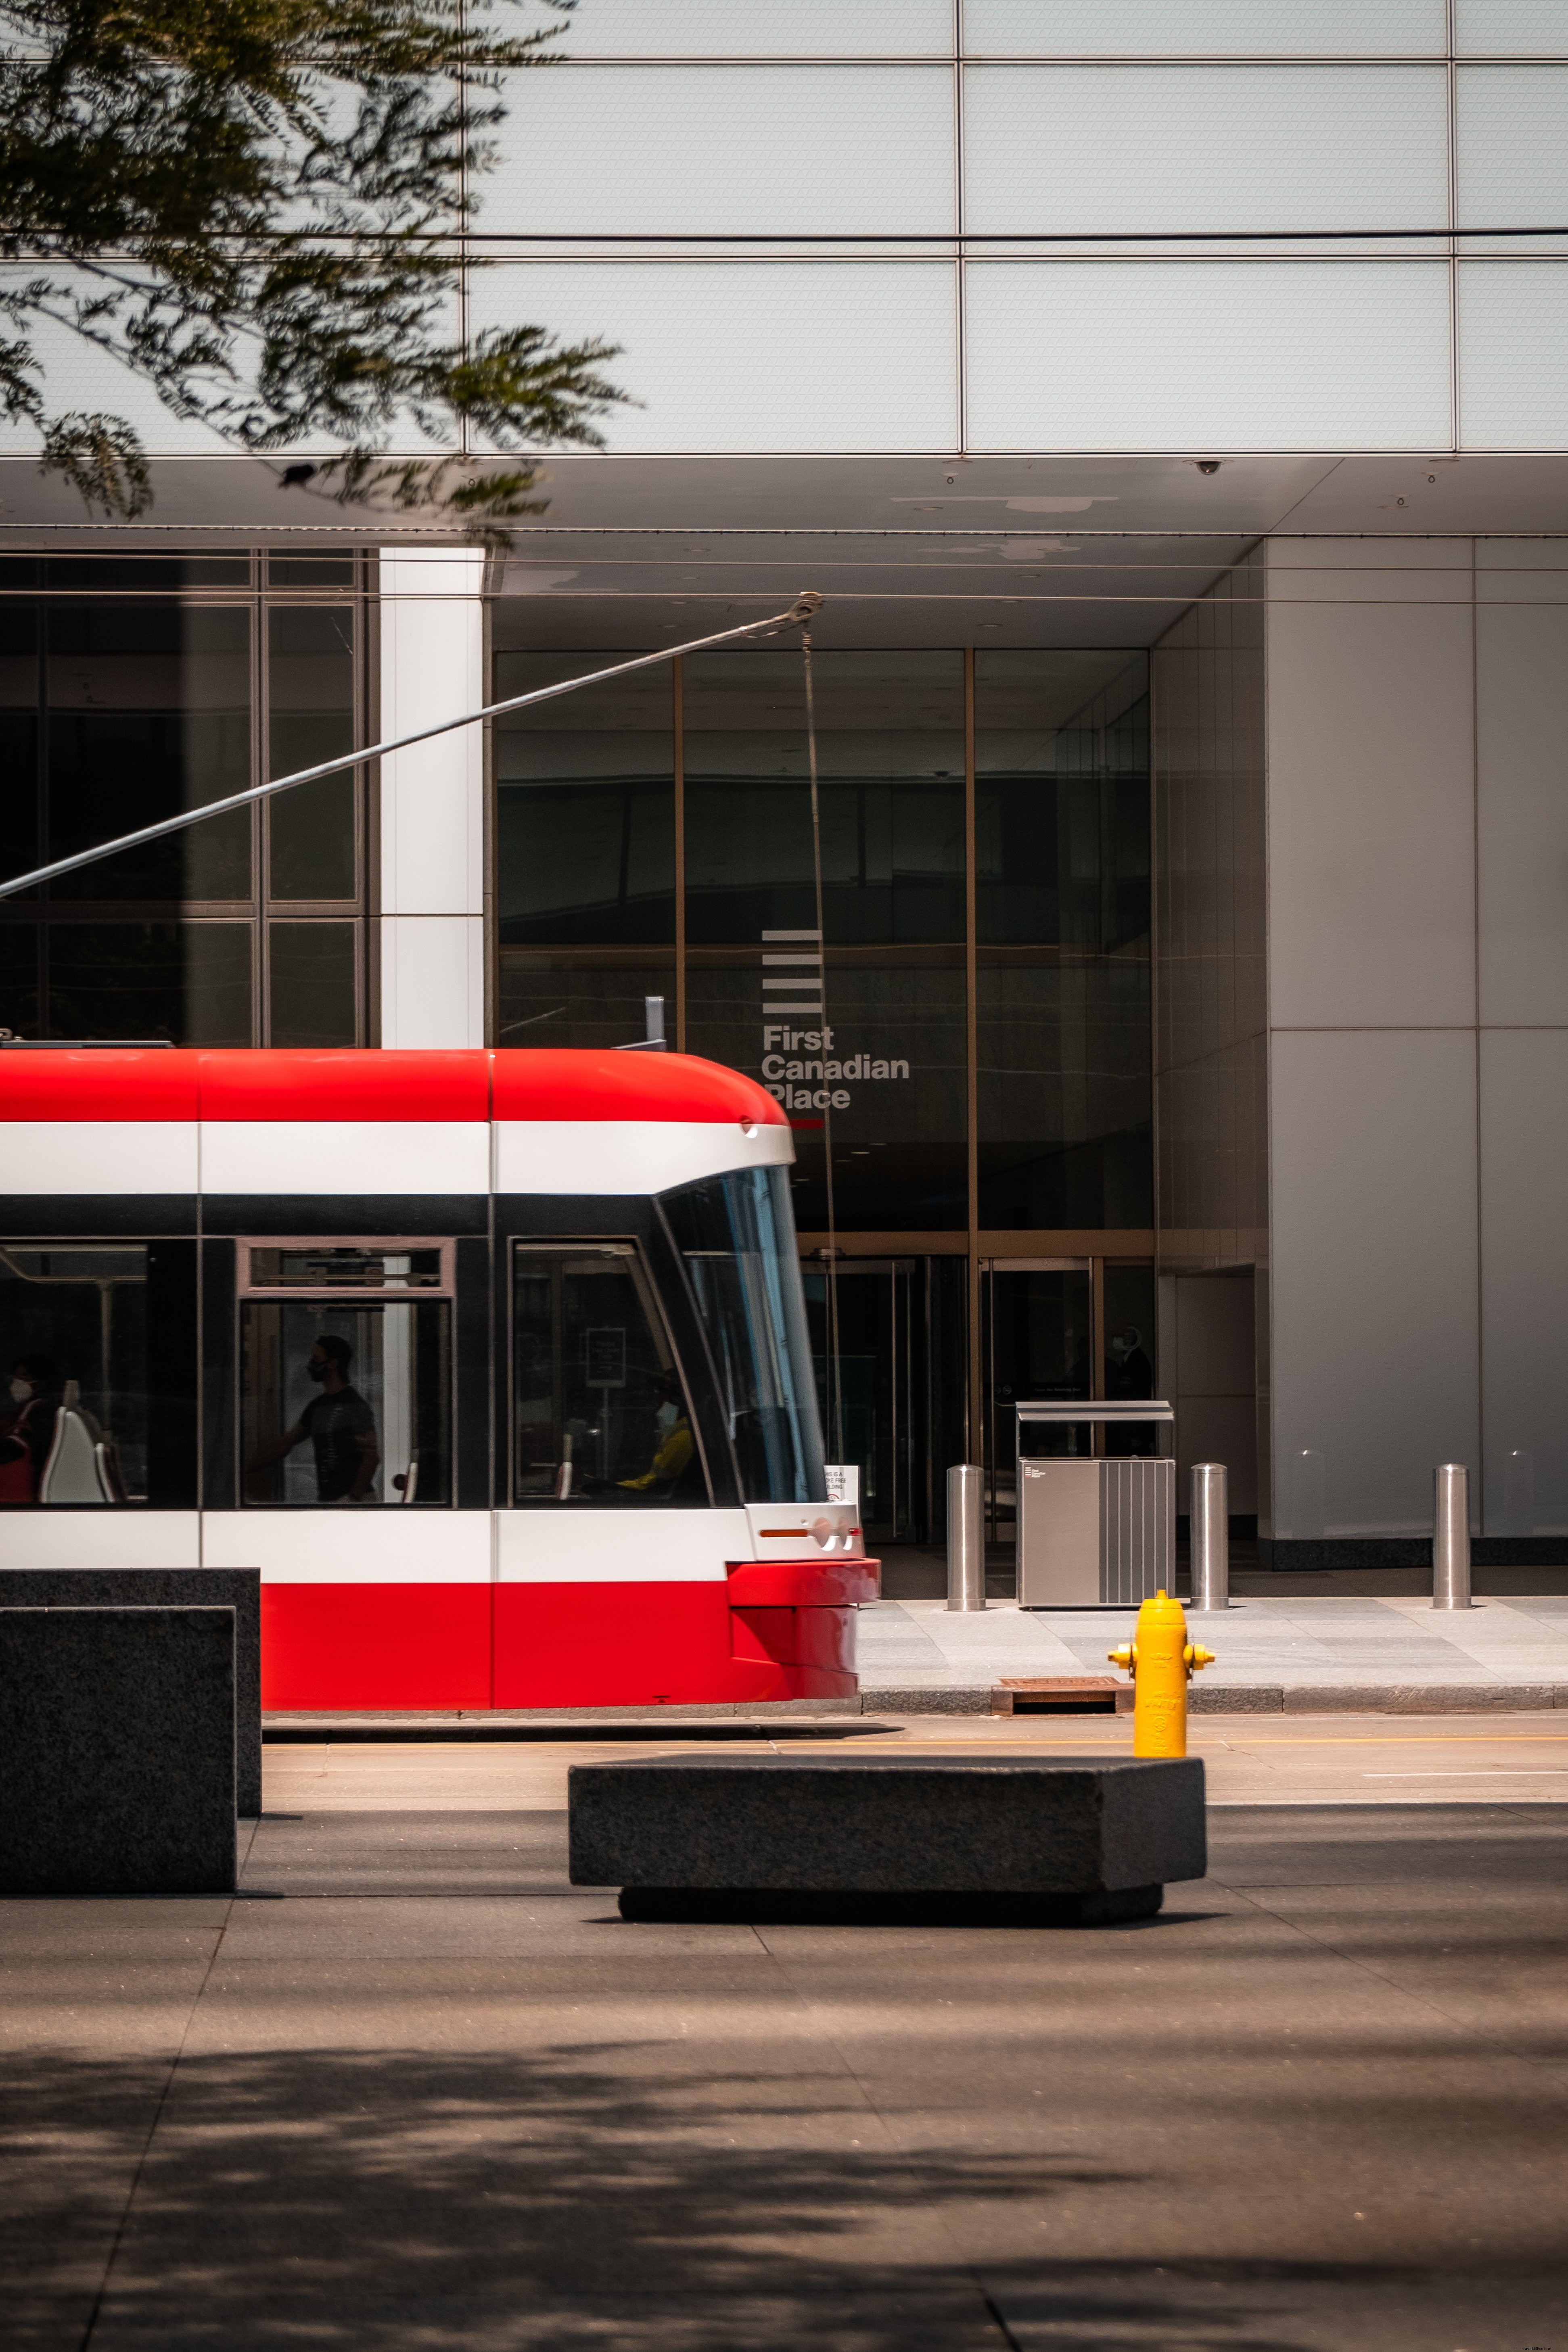 Lato di un edificio di vetro con un tram rosso foto 